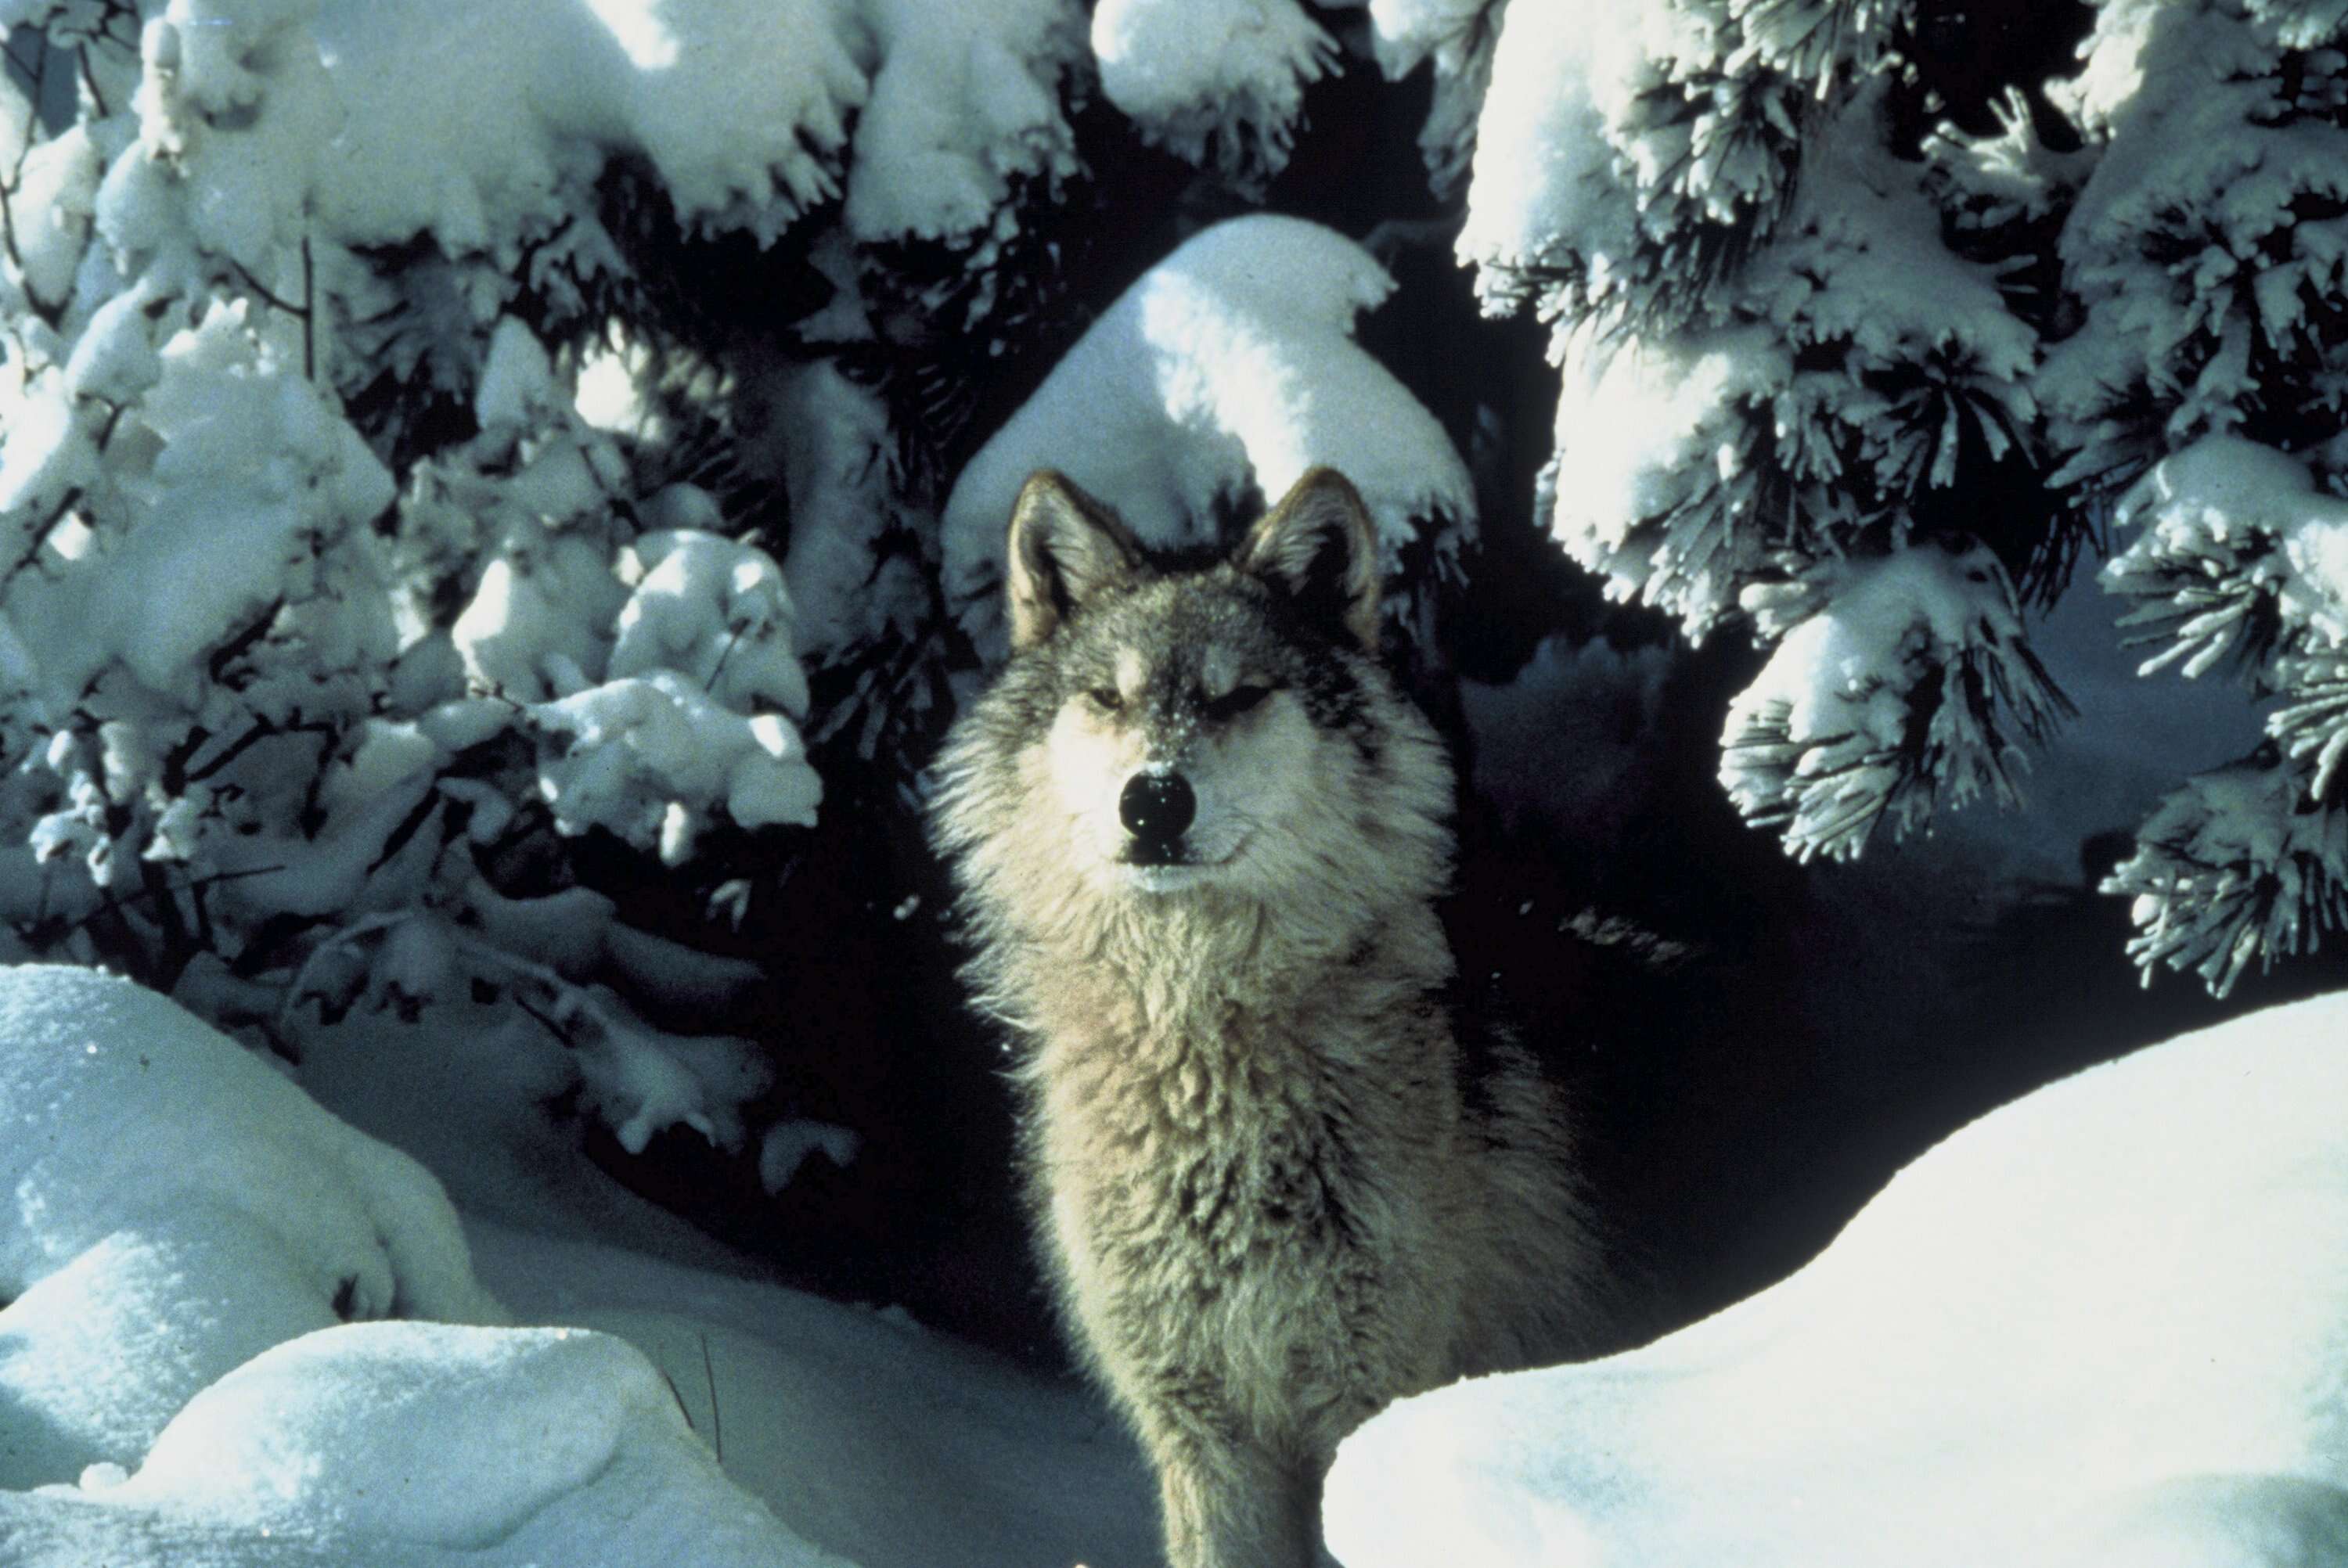 Image of Northwestern wolf